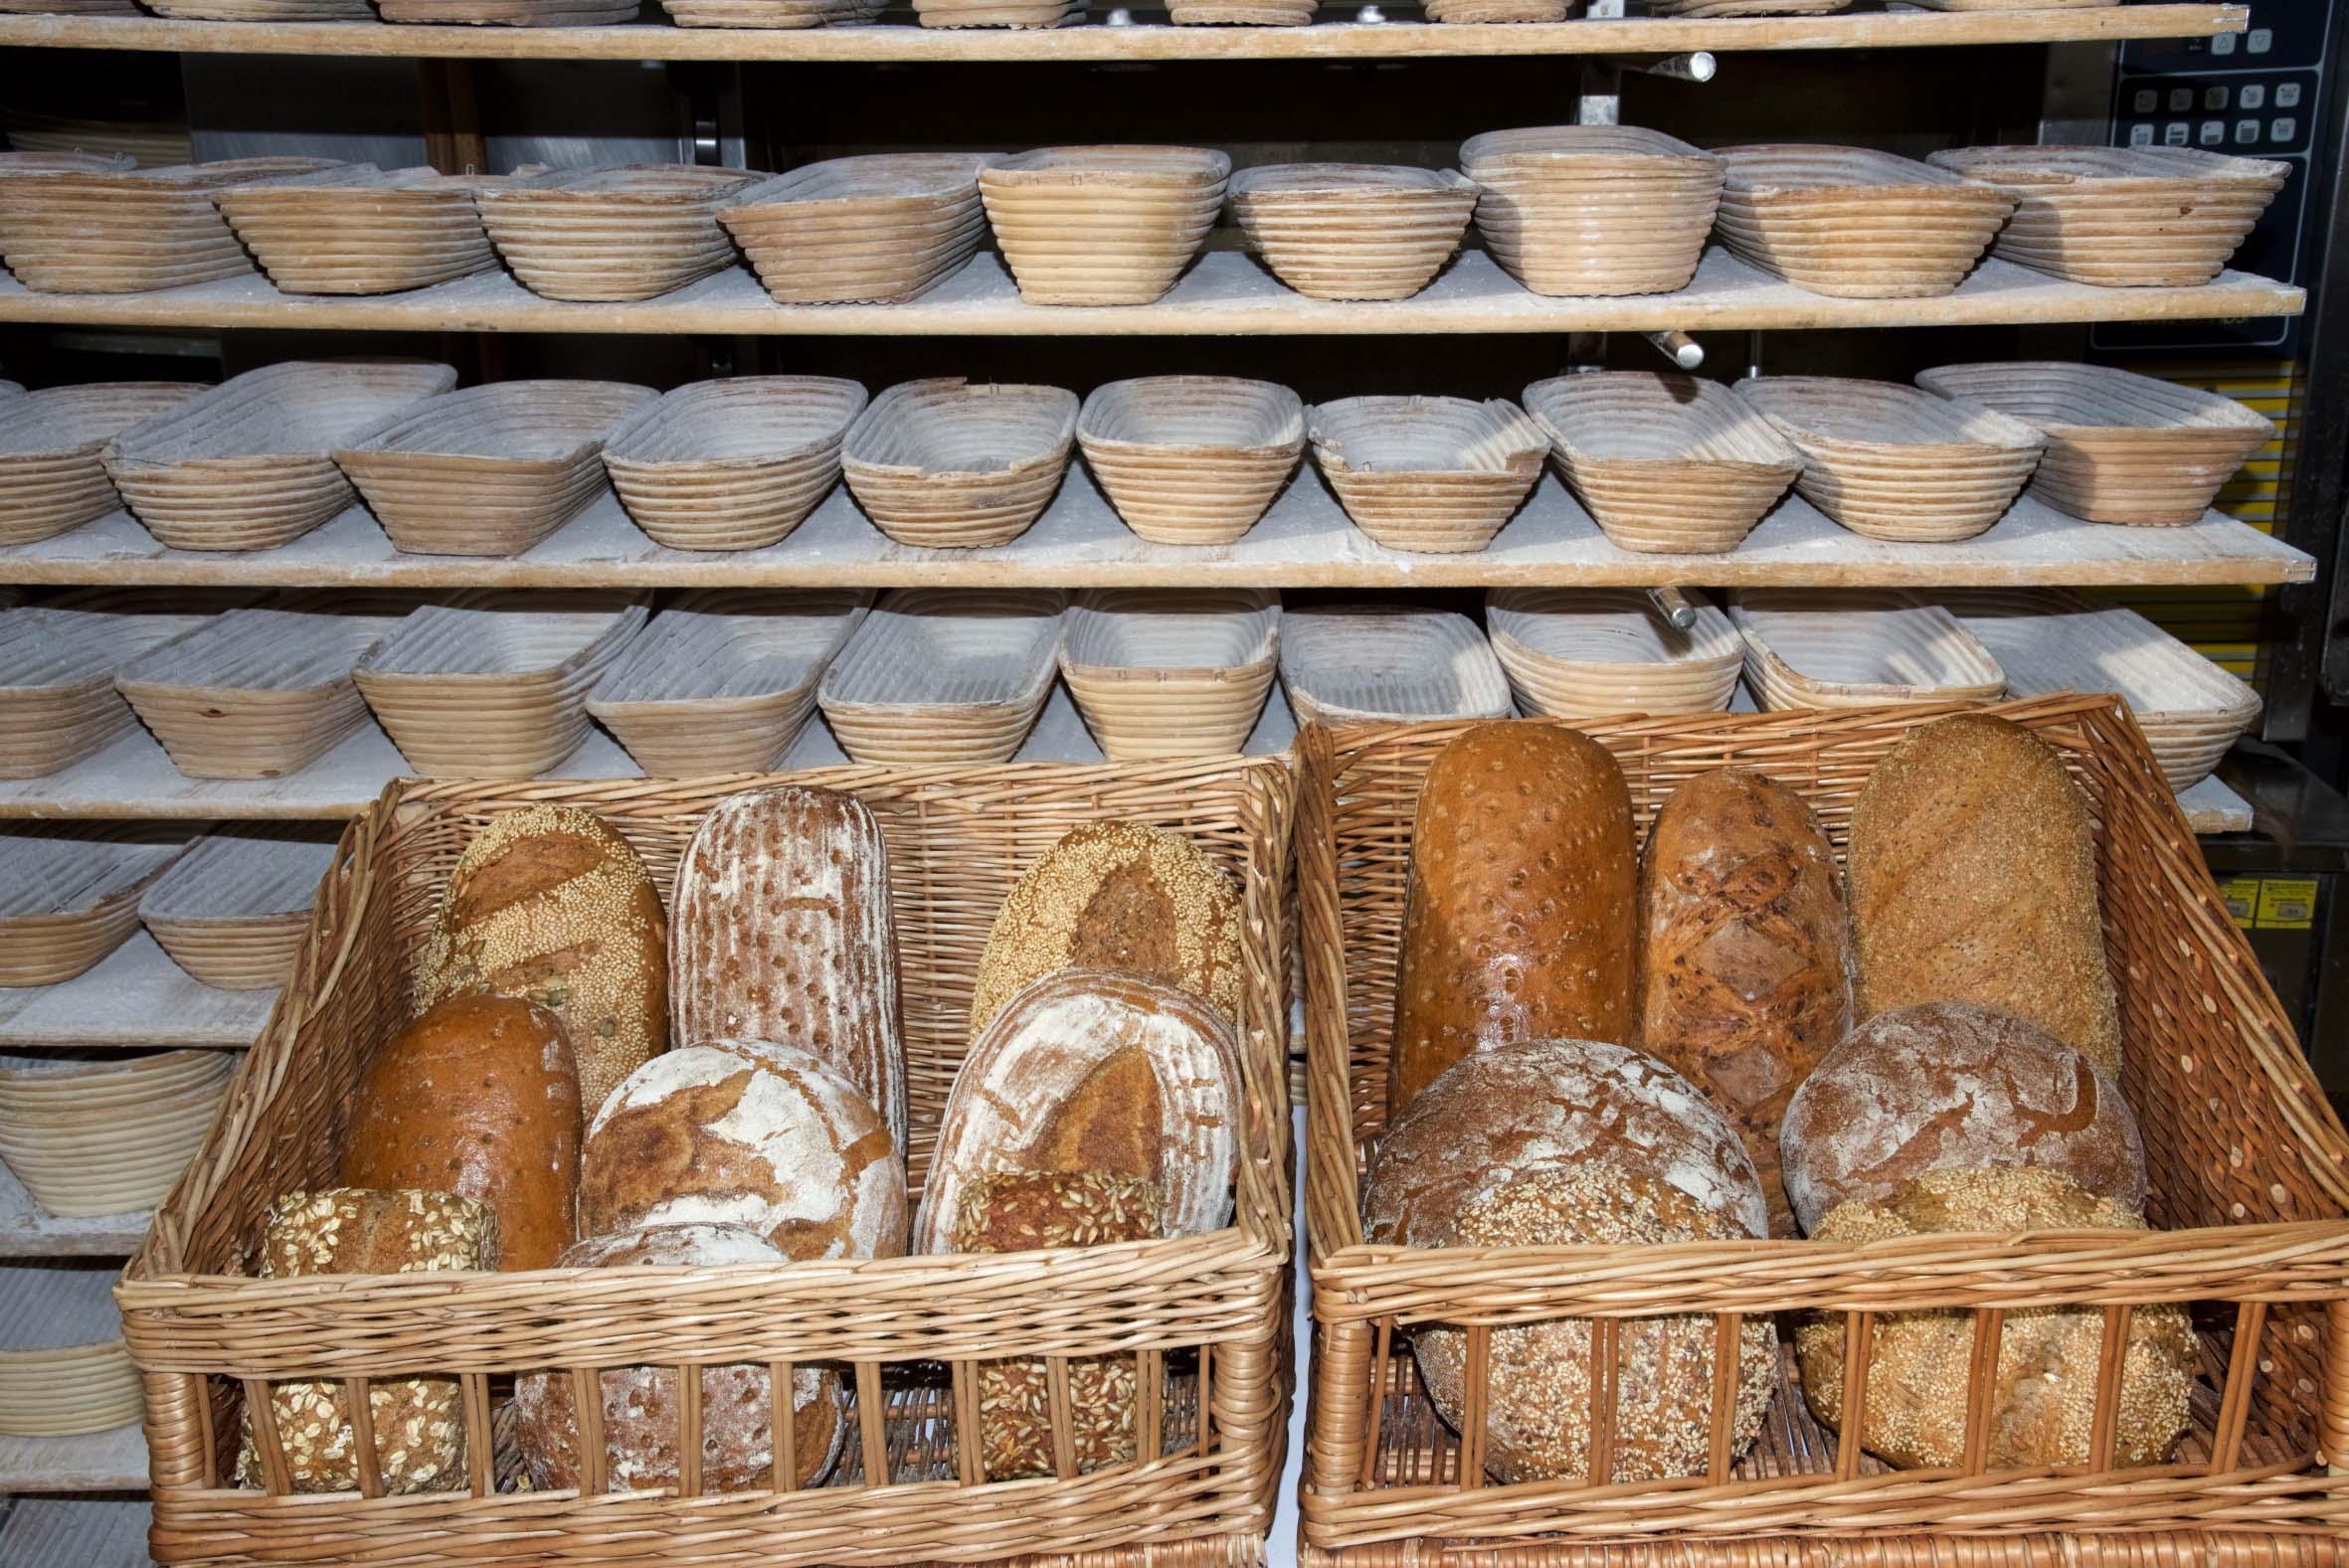 Die Brotvielfalt in Deutschland ist mit über 3.200 eingetragenen Spezialitäten enorm. Brot ist dank Handwerksbäckern, Backshops und prall gefüllten Supermarktregalen jederzeit verfügbar.